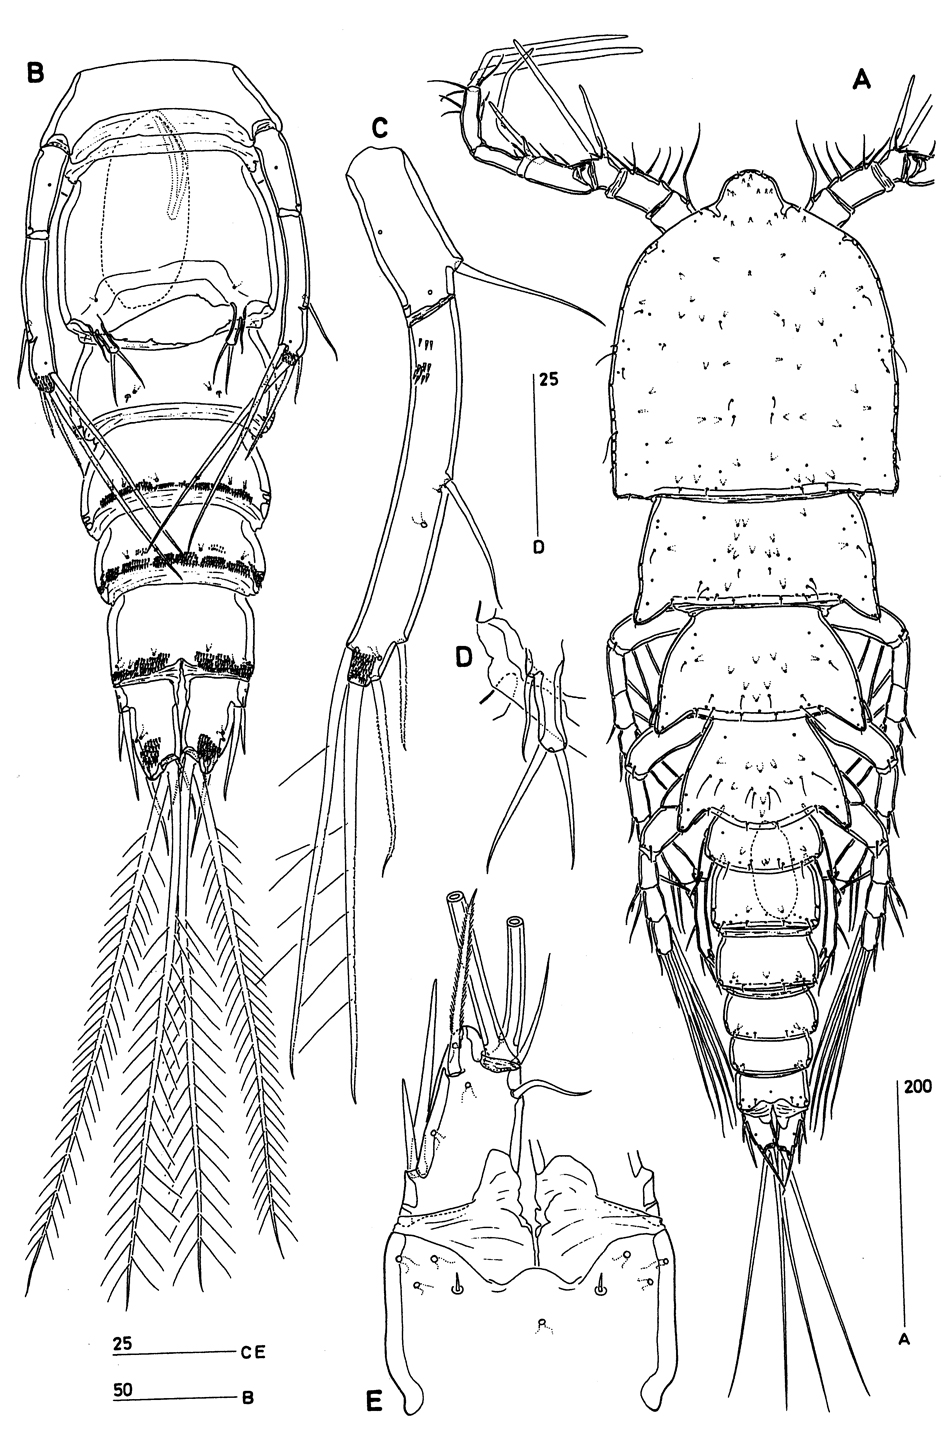 Espèce Clytemnestra asetosa - Planche 6 de figures morphologiques